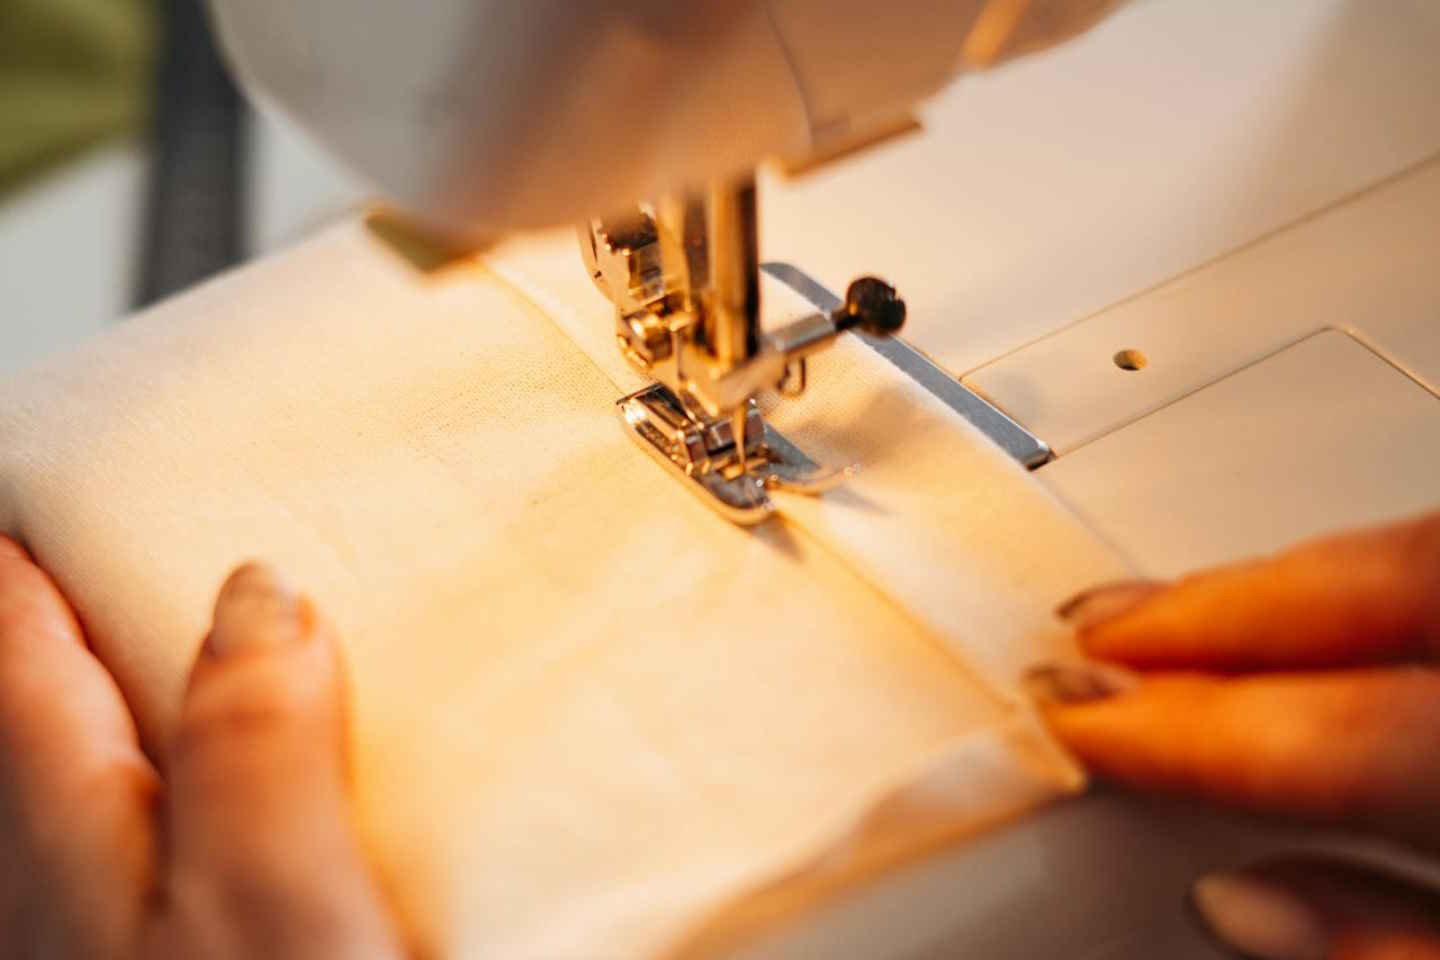 Новости Казахстана / Экономика в Казахстане / В Карагандинской области обнаружилась нехватка мастеров швейного дела